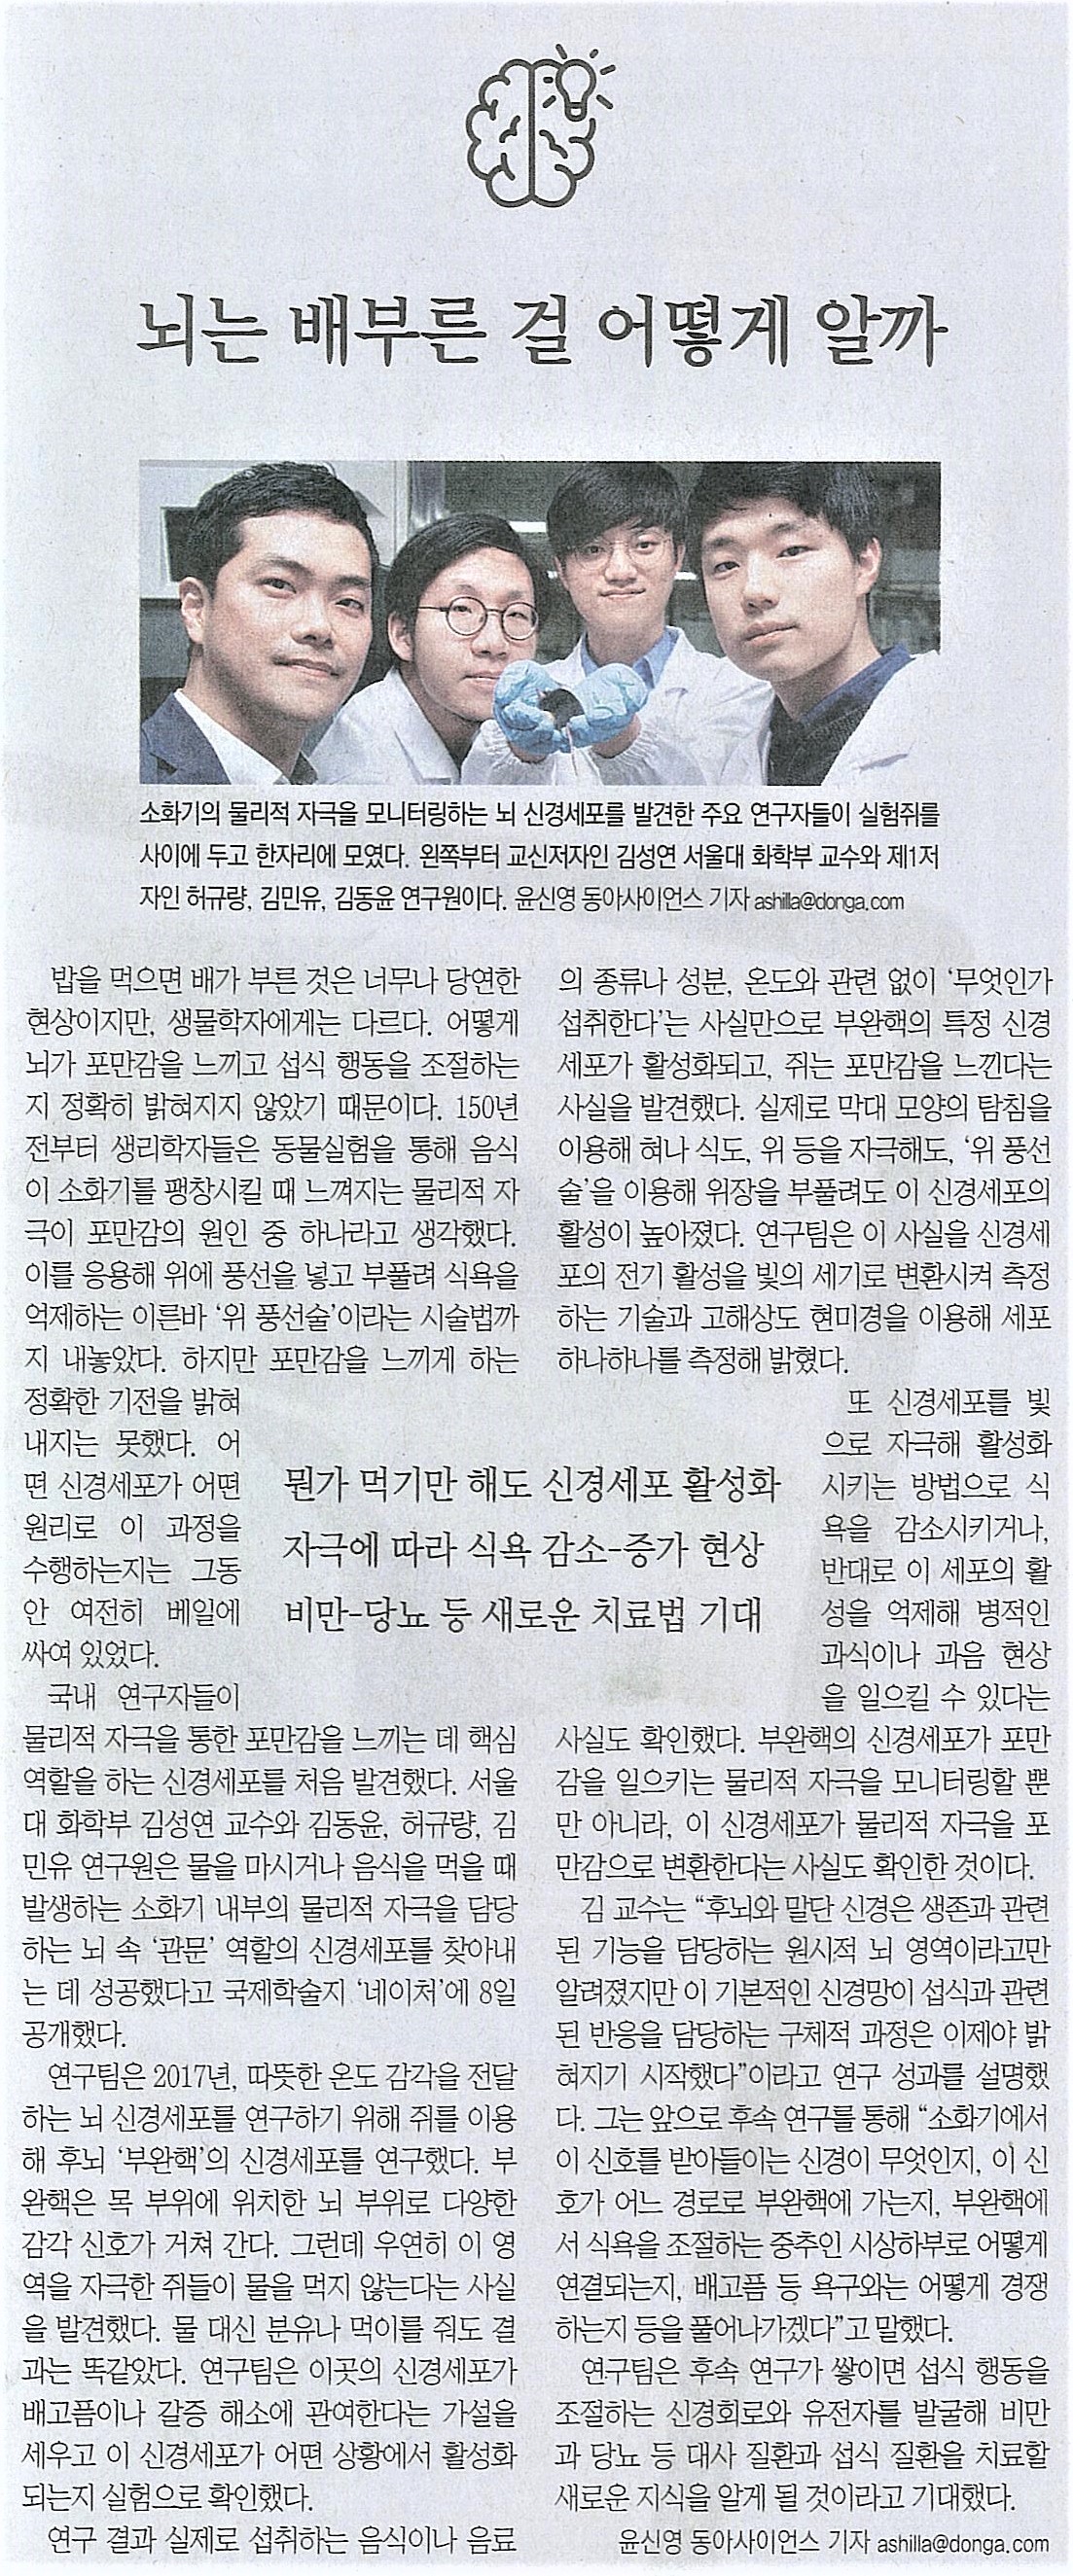 4-13 동아일보 기사 스캔